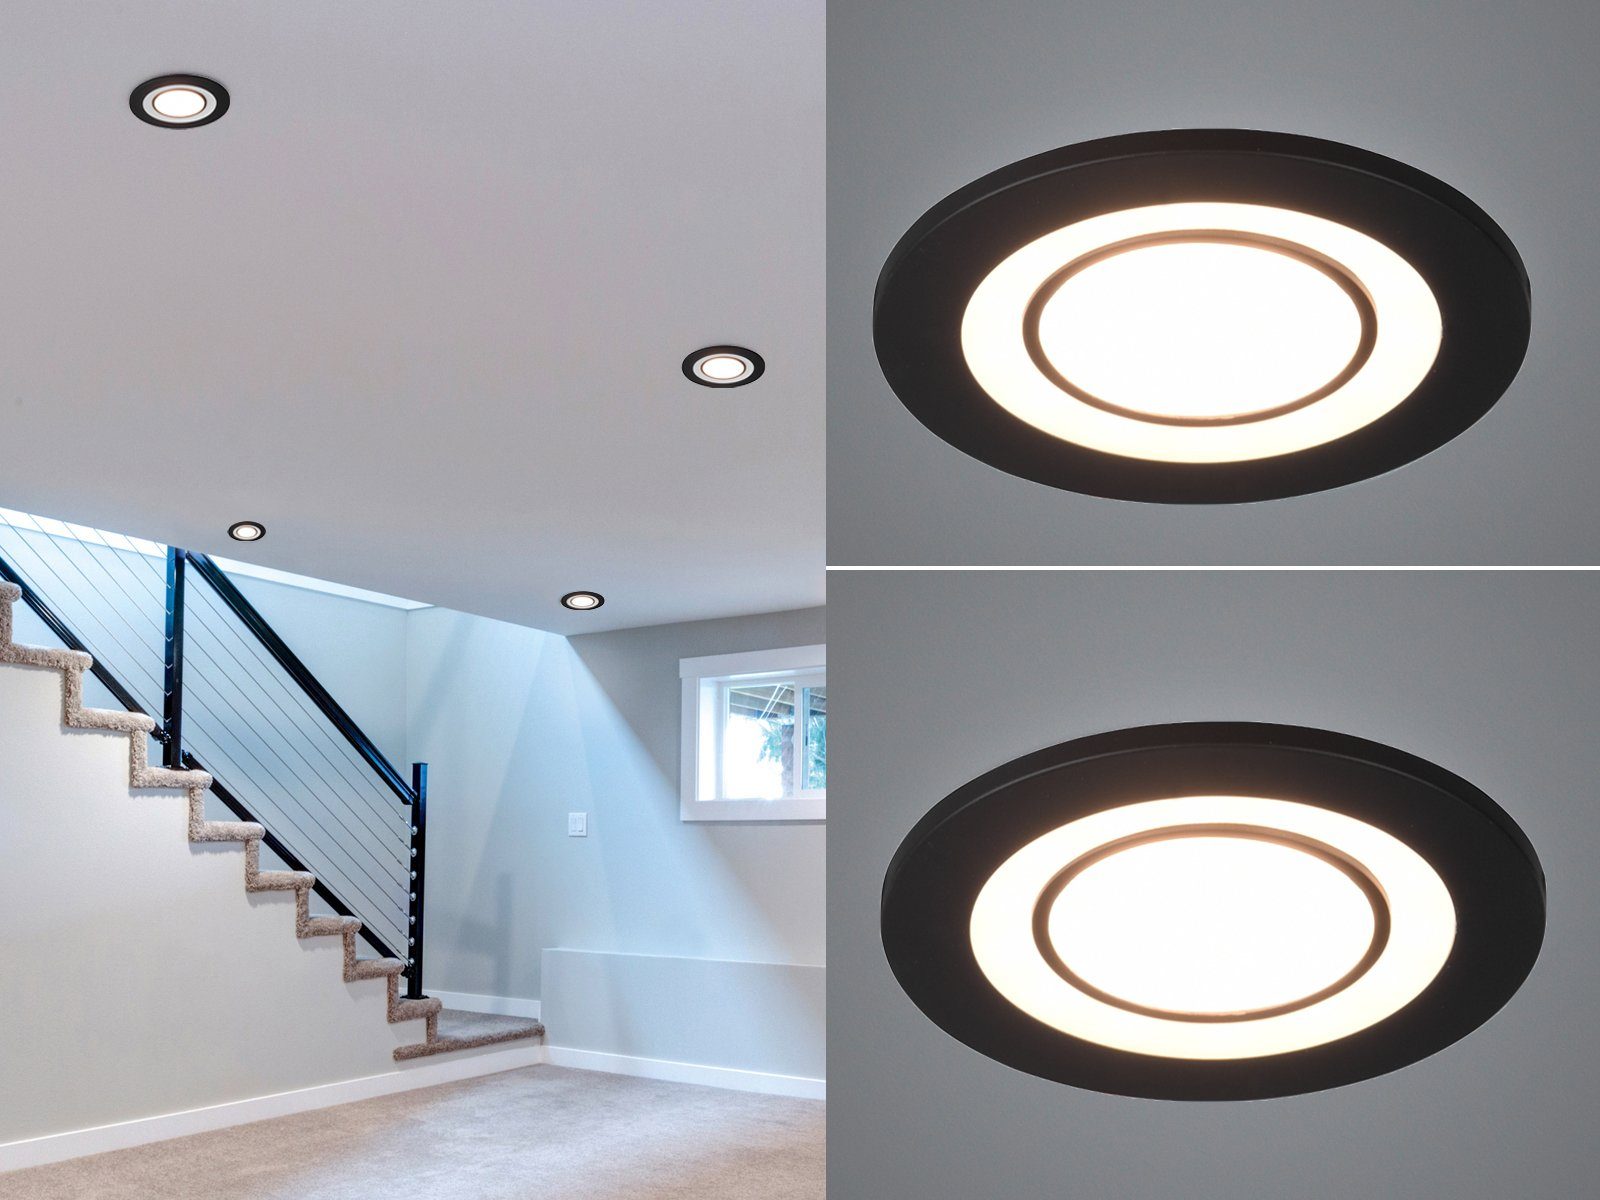 3x LED Einbau Decken Lampen DIMMBAR Tages-Licht ALU Spot Leuchten FERNBEDIENUNG 